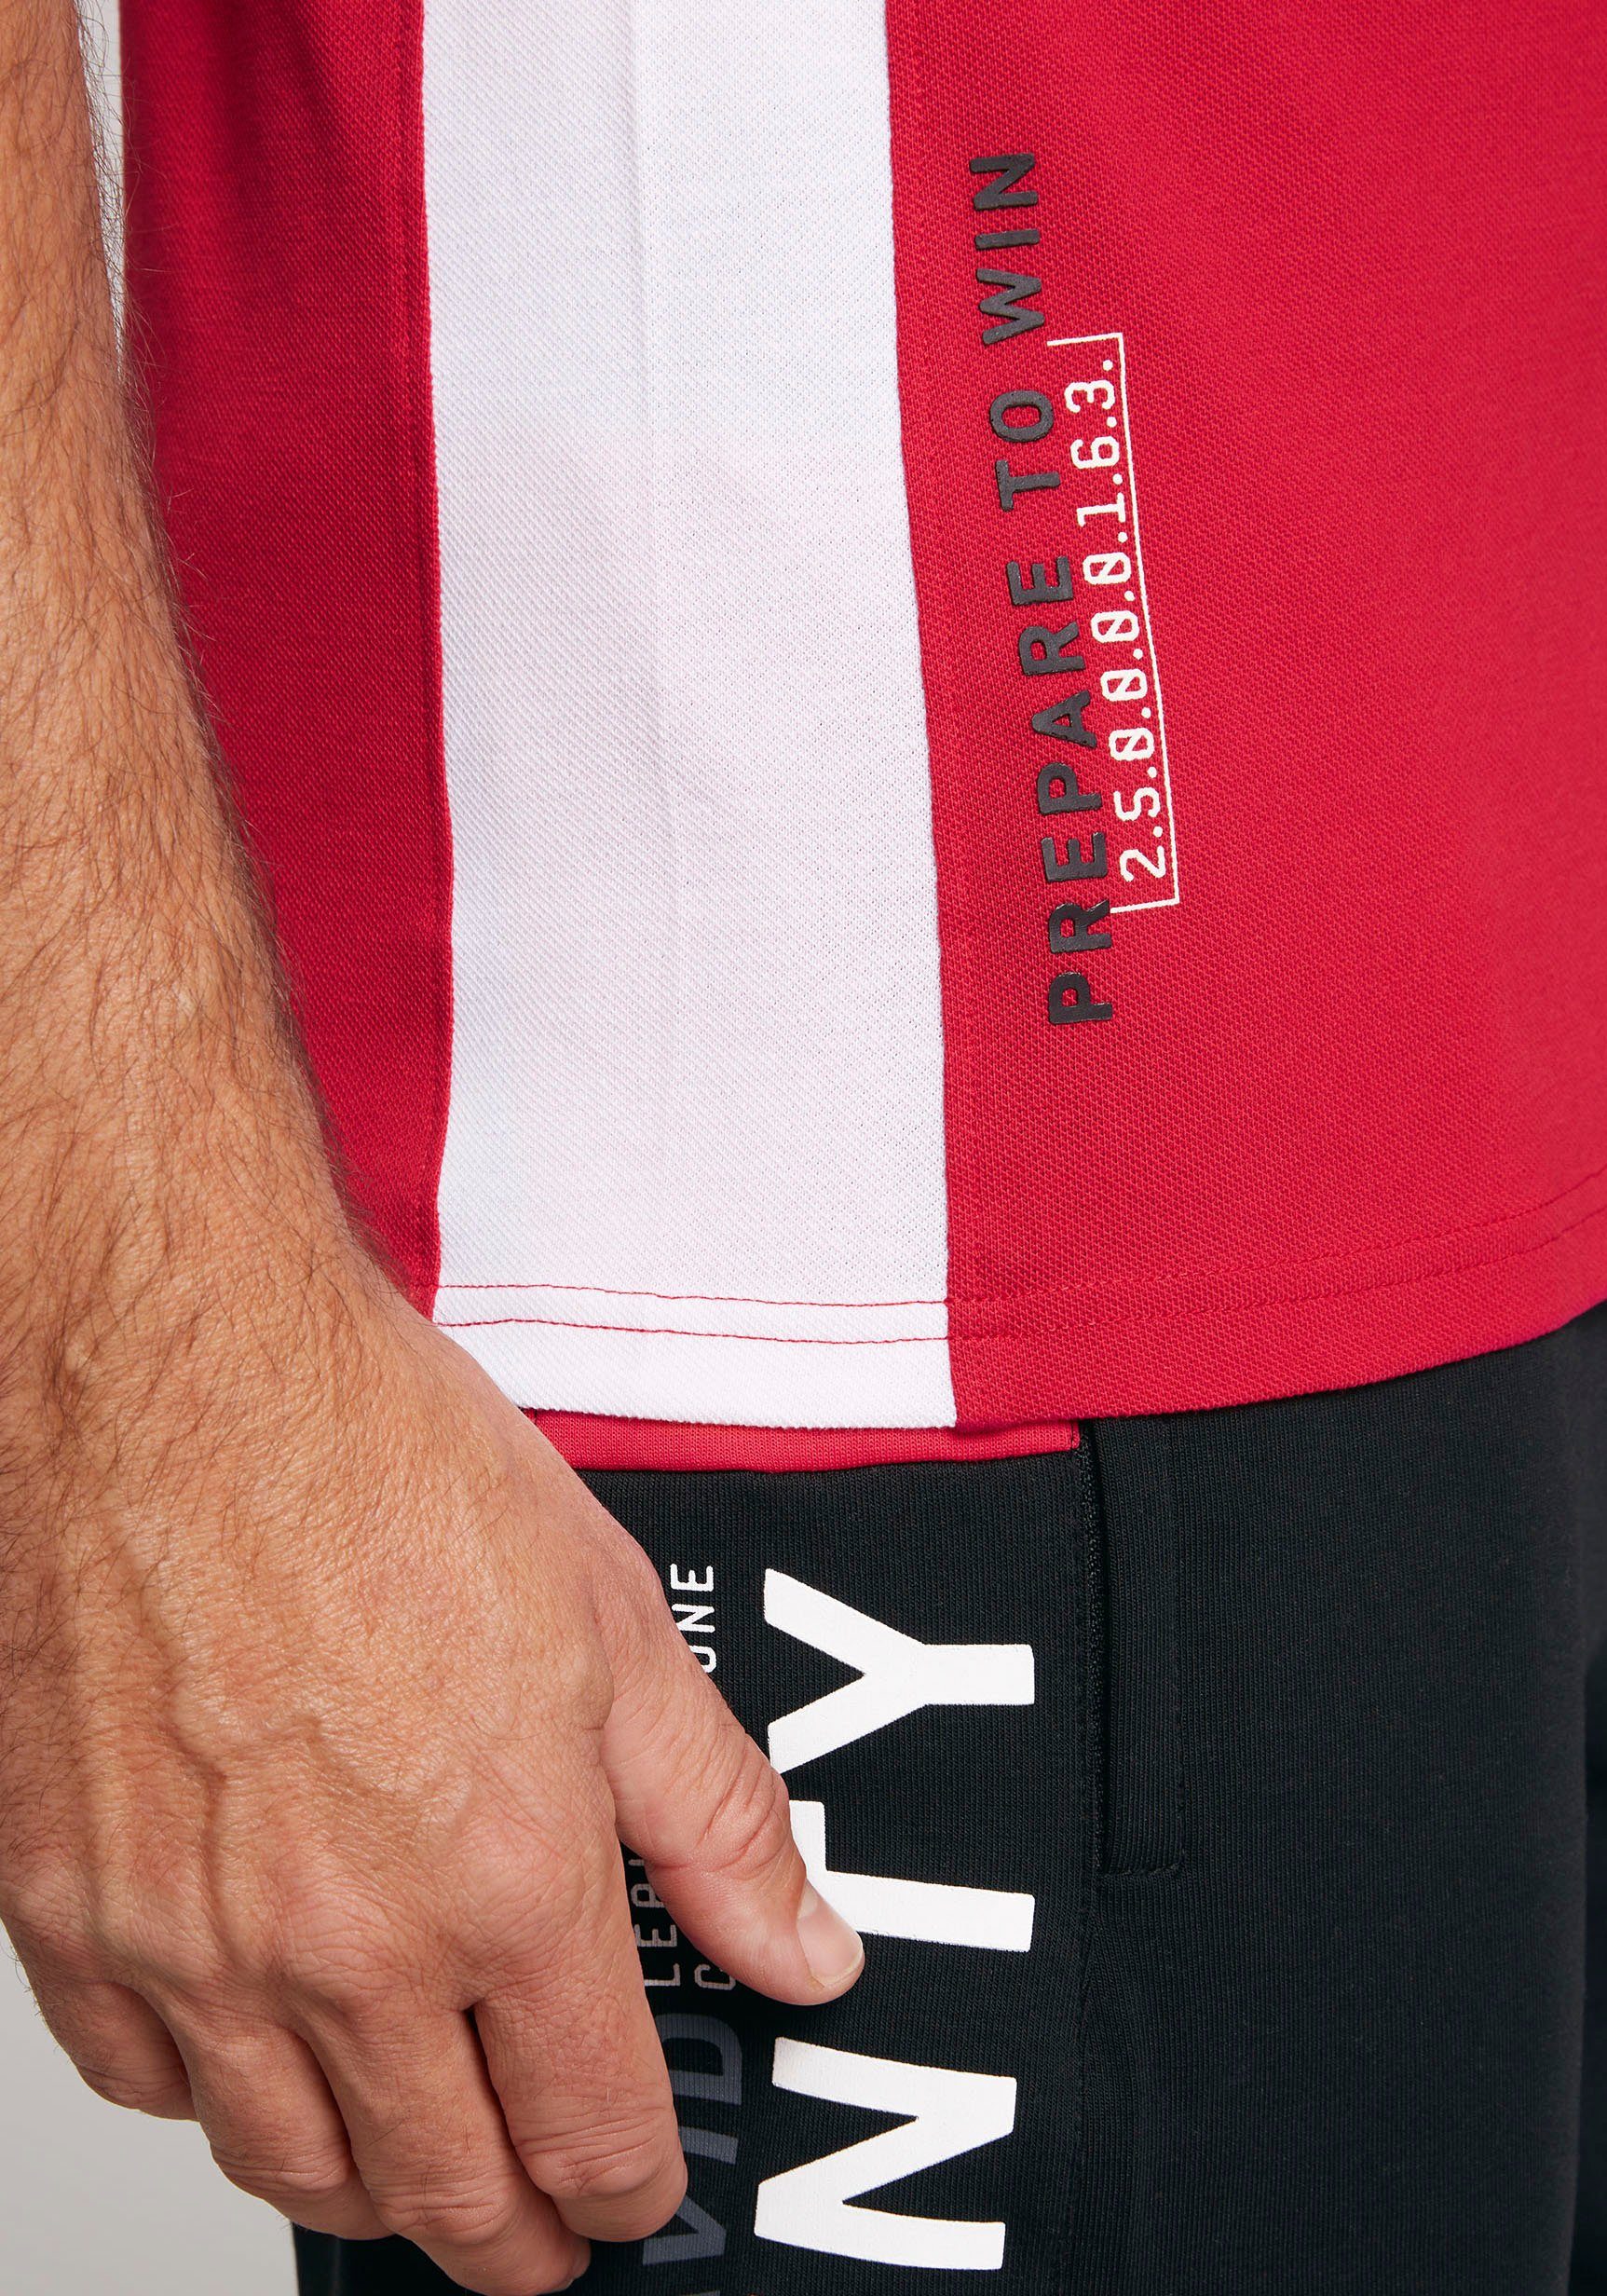 CAMP DAVID Poloshirt mit Rubber Prints auf Ärmeln, power Vorder- und red Rückseite